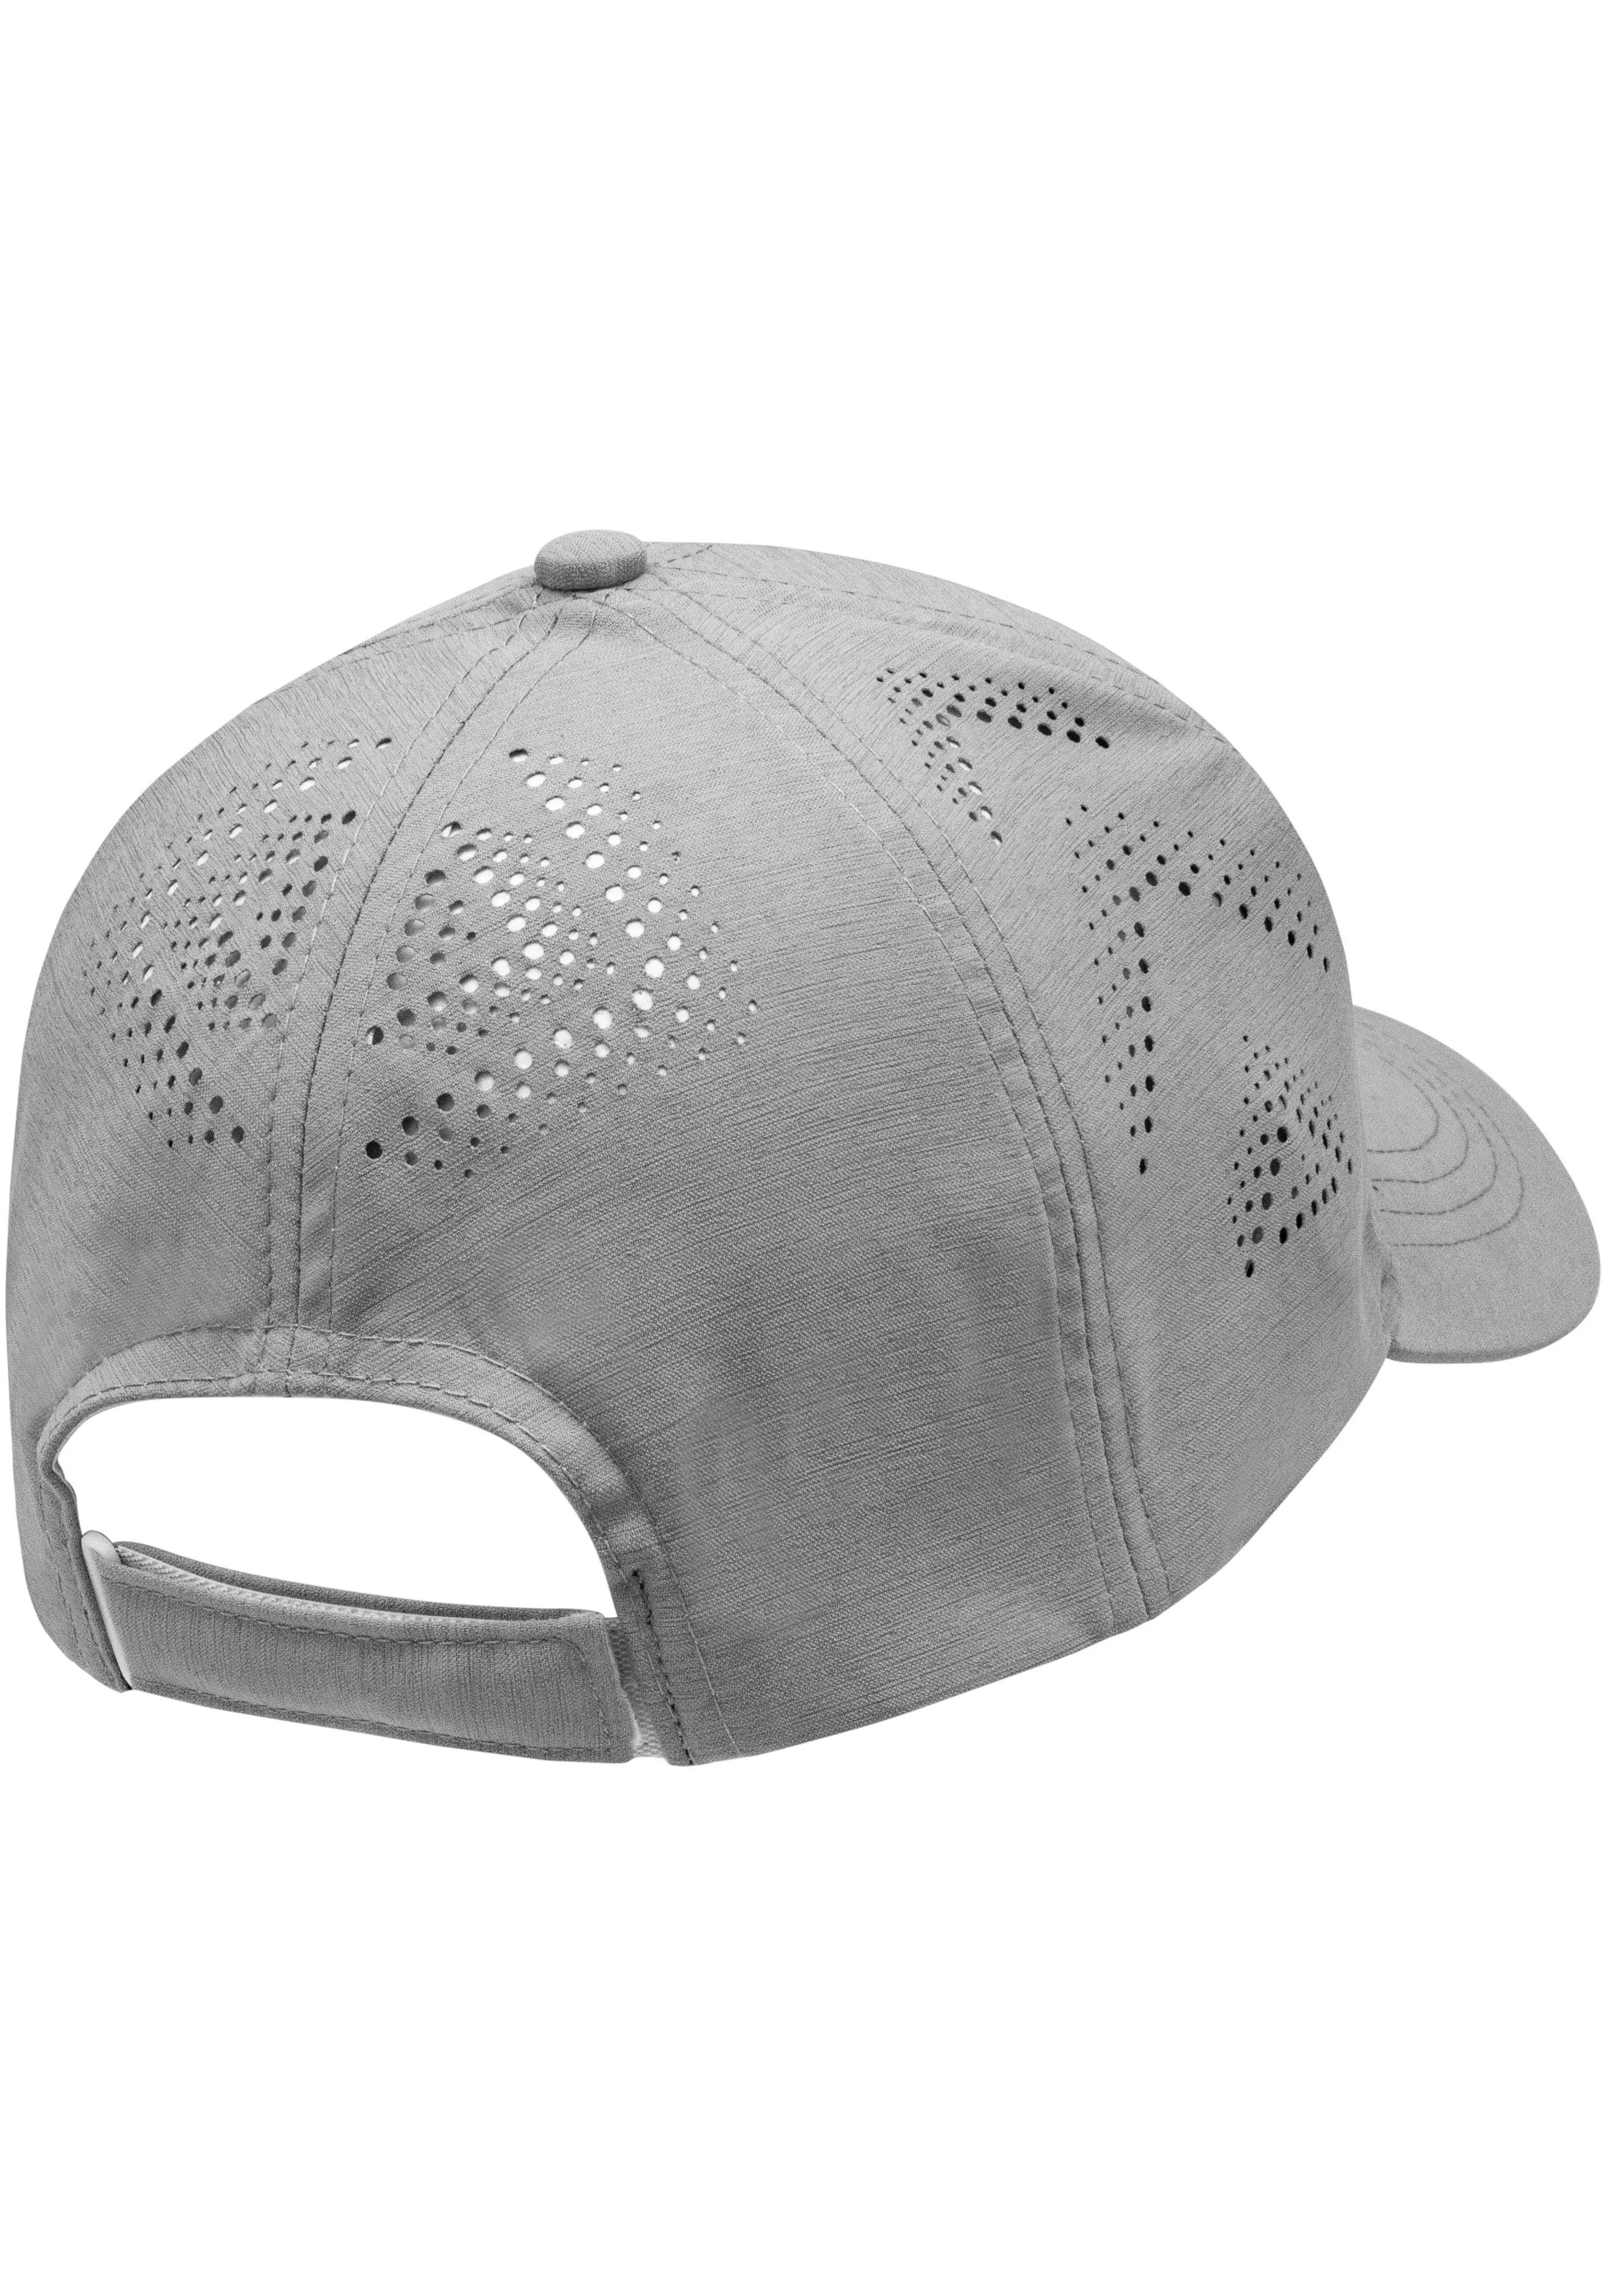 chillouts Baseball Cap, Philadelphia Hat, Cap mit Klettverschluß, UPF50+ günstig online kaufen